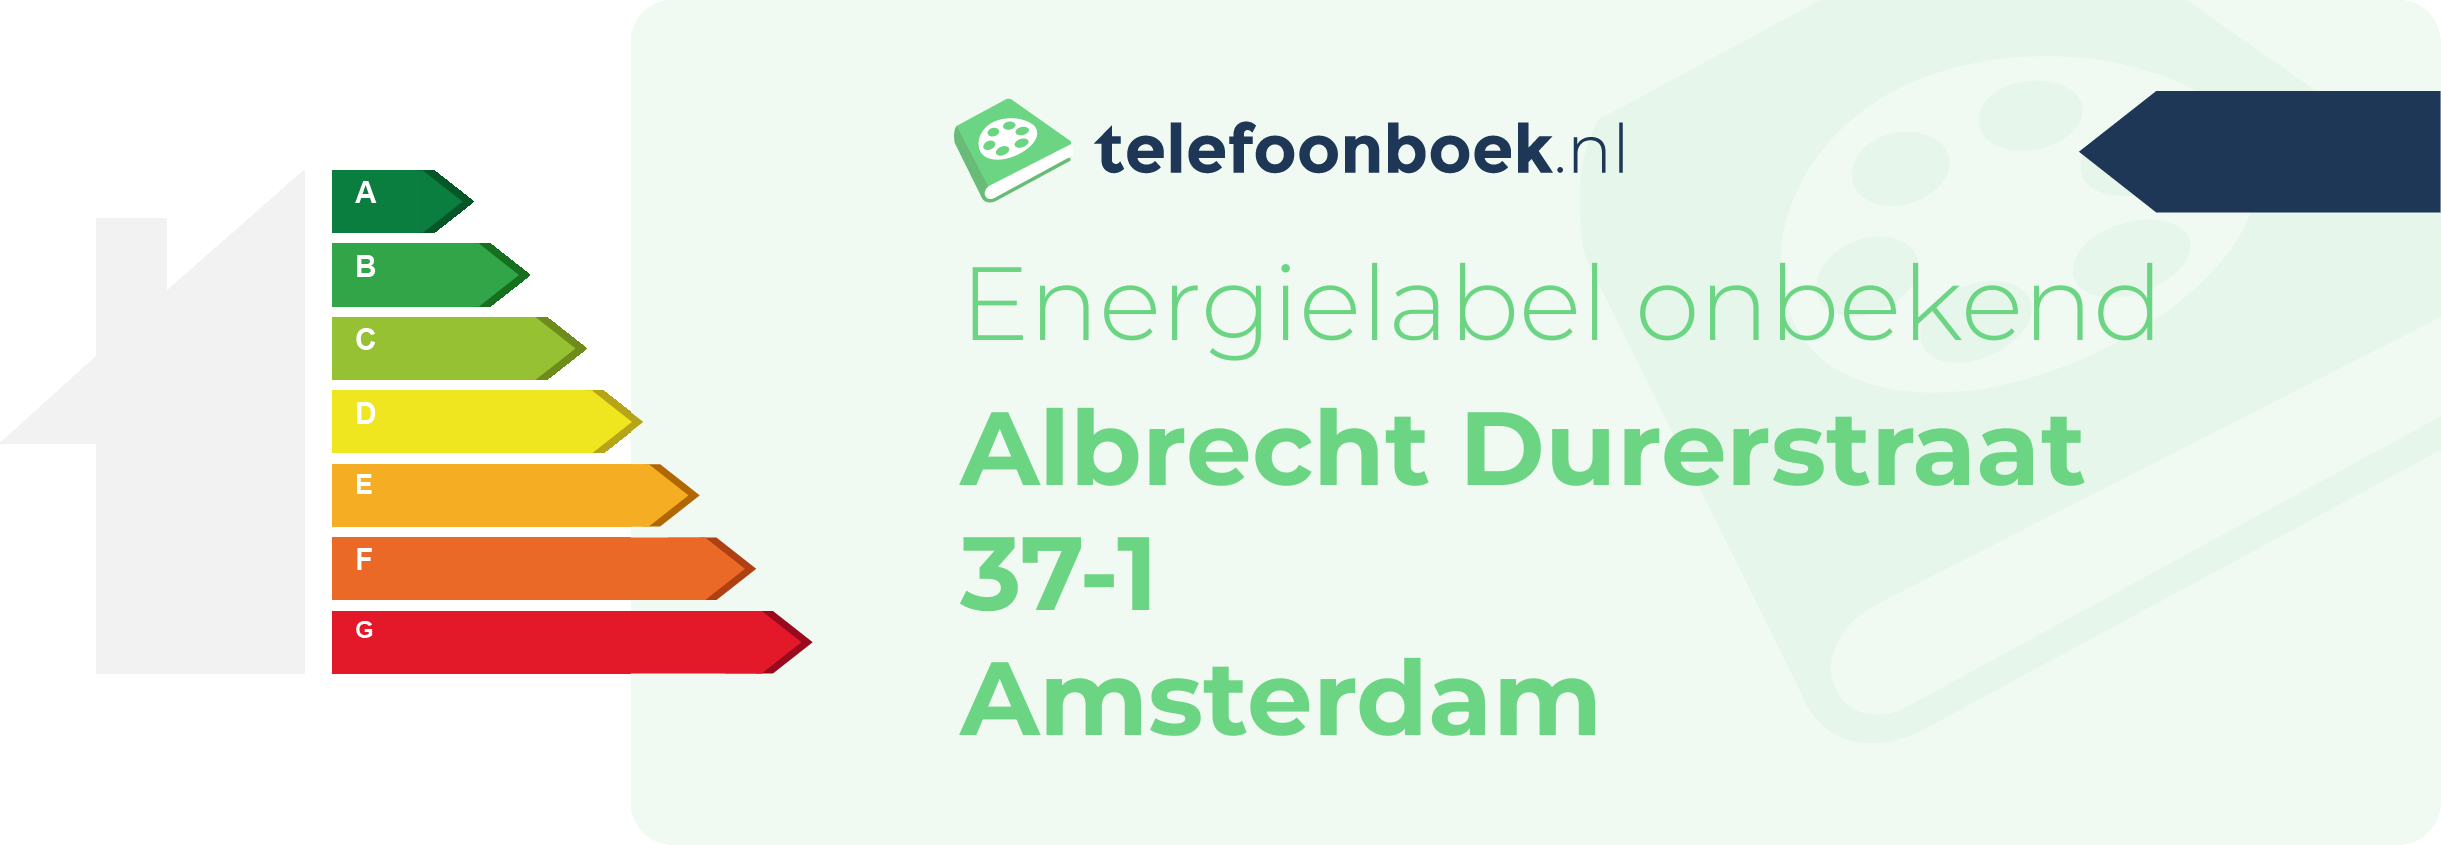 Energielabel Albrecht Durerstraat 37-1 Amsterdam